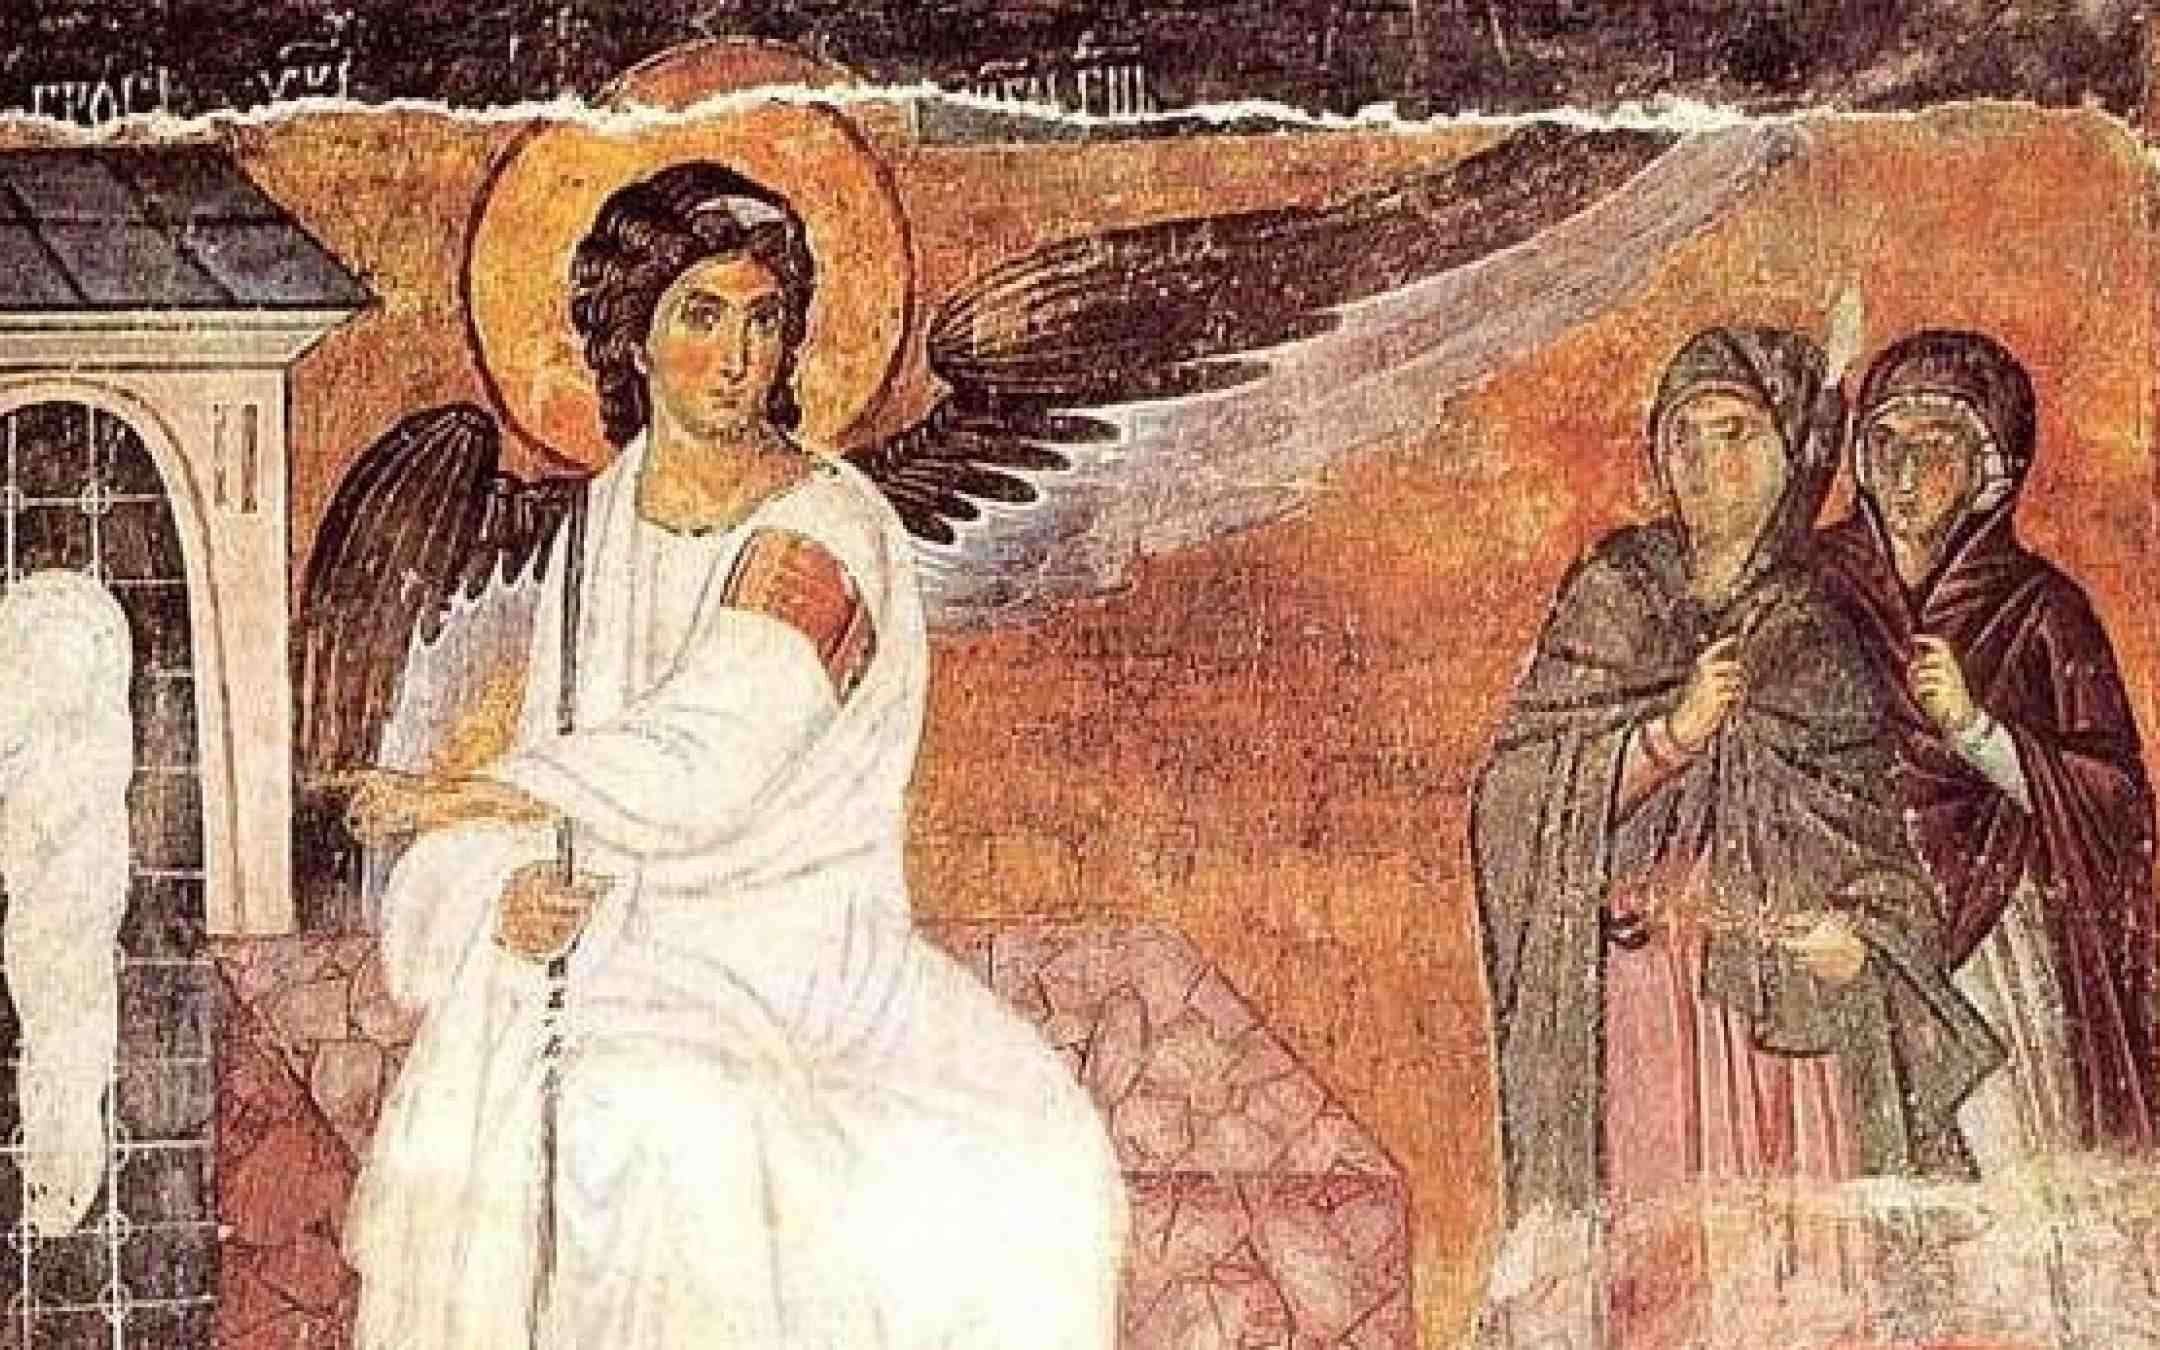 Mirhantuojat ja enkeli Kristuksen haudalla pääsiäisenä -fresko